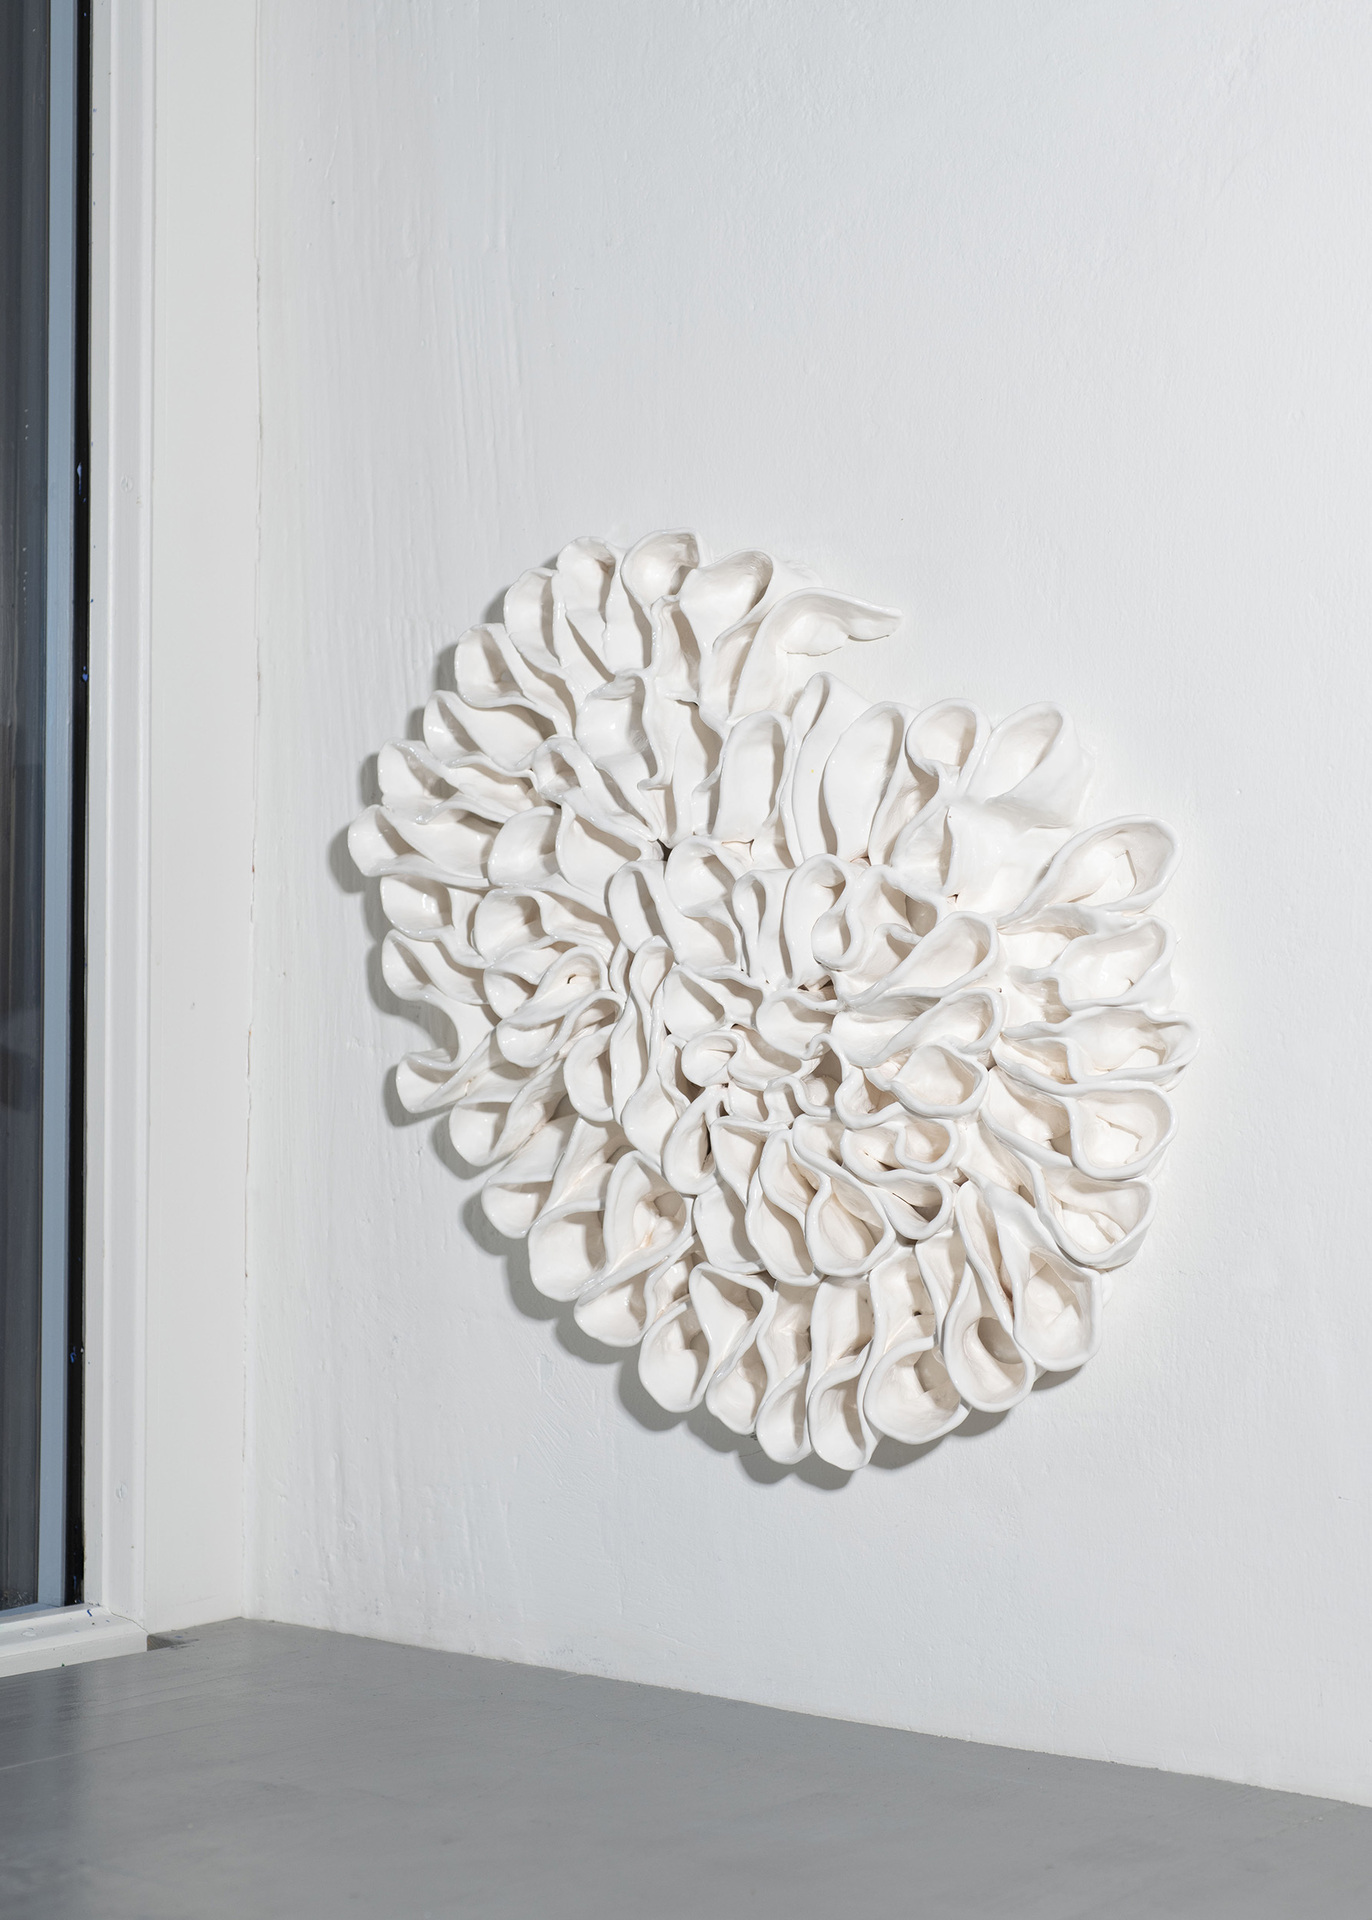 June Fischer, Egg, 2020, Porcelain, 35 x 50 cm